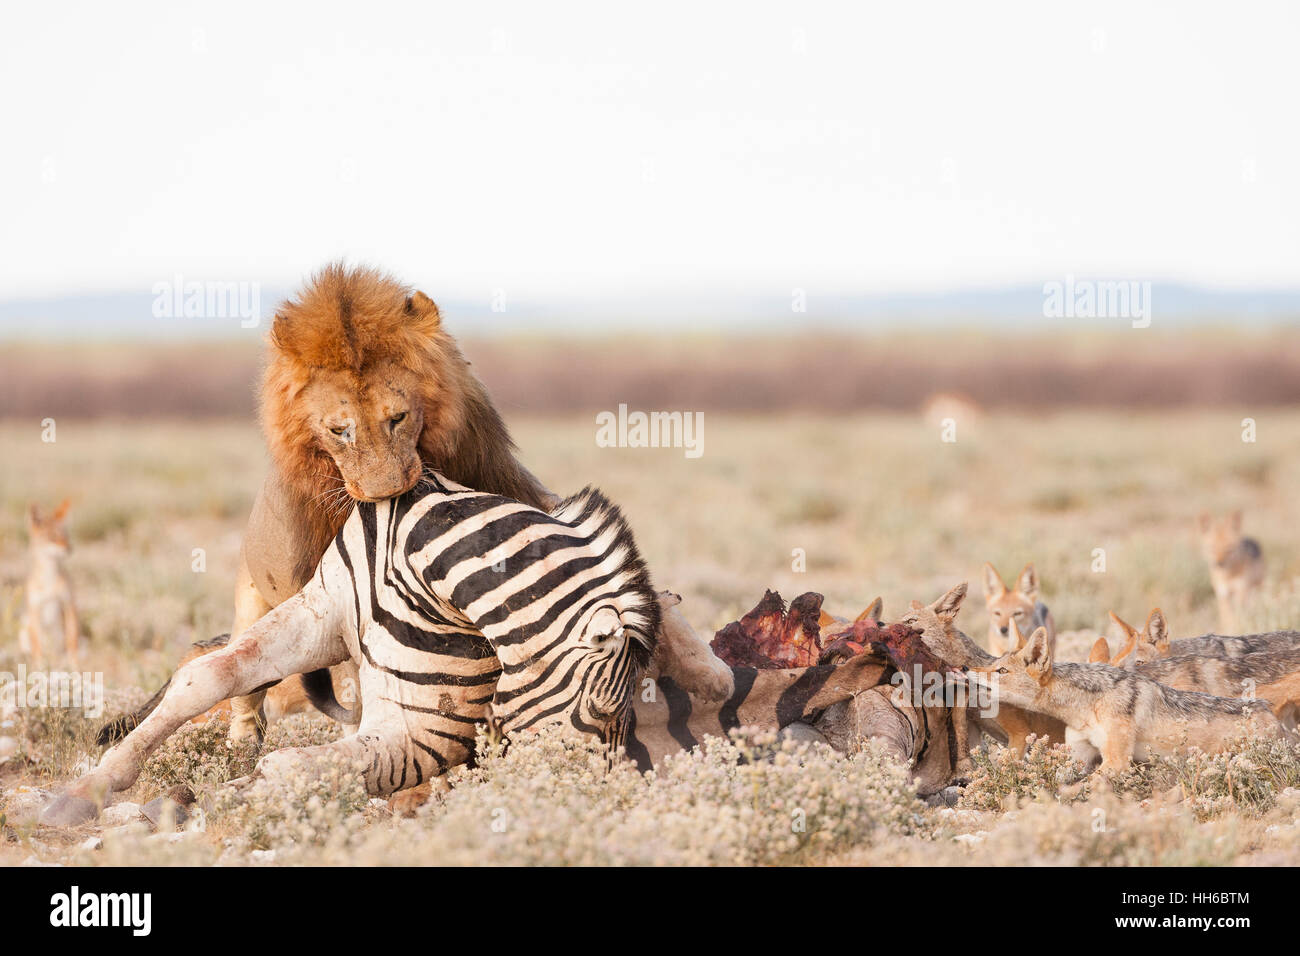 Etosha National Park Namibia A large male lion  picks up 